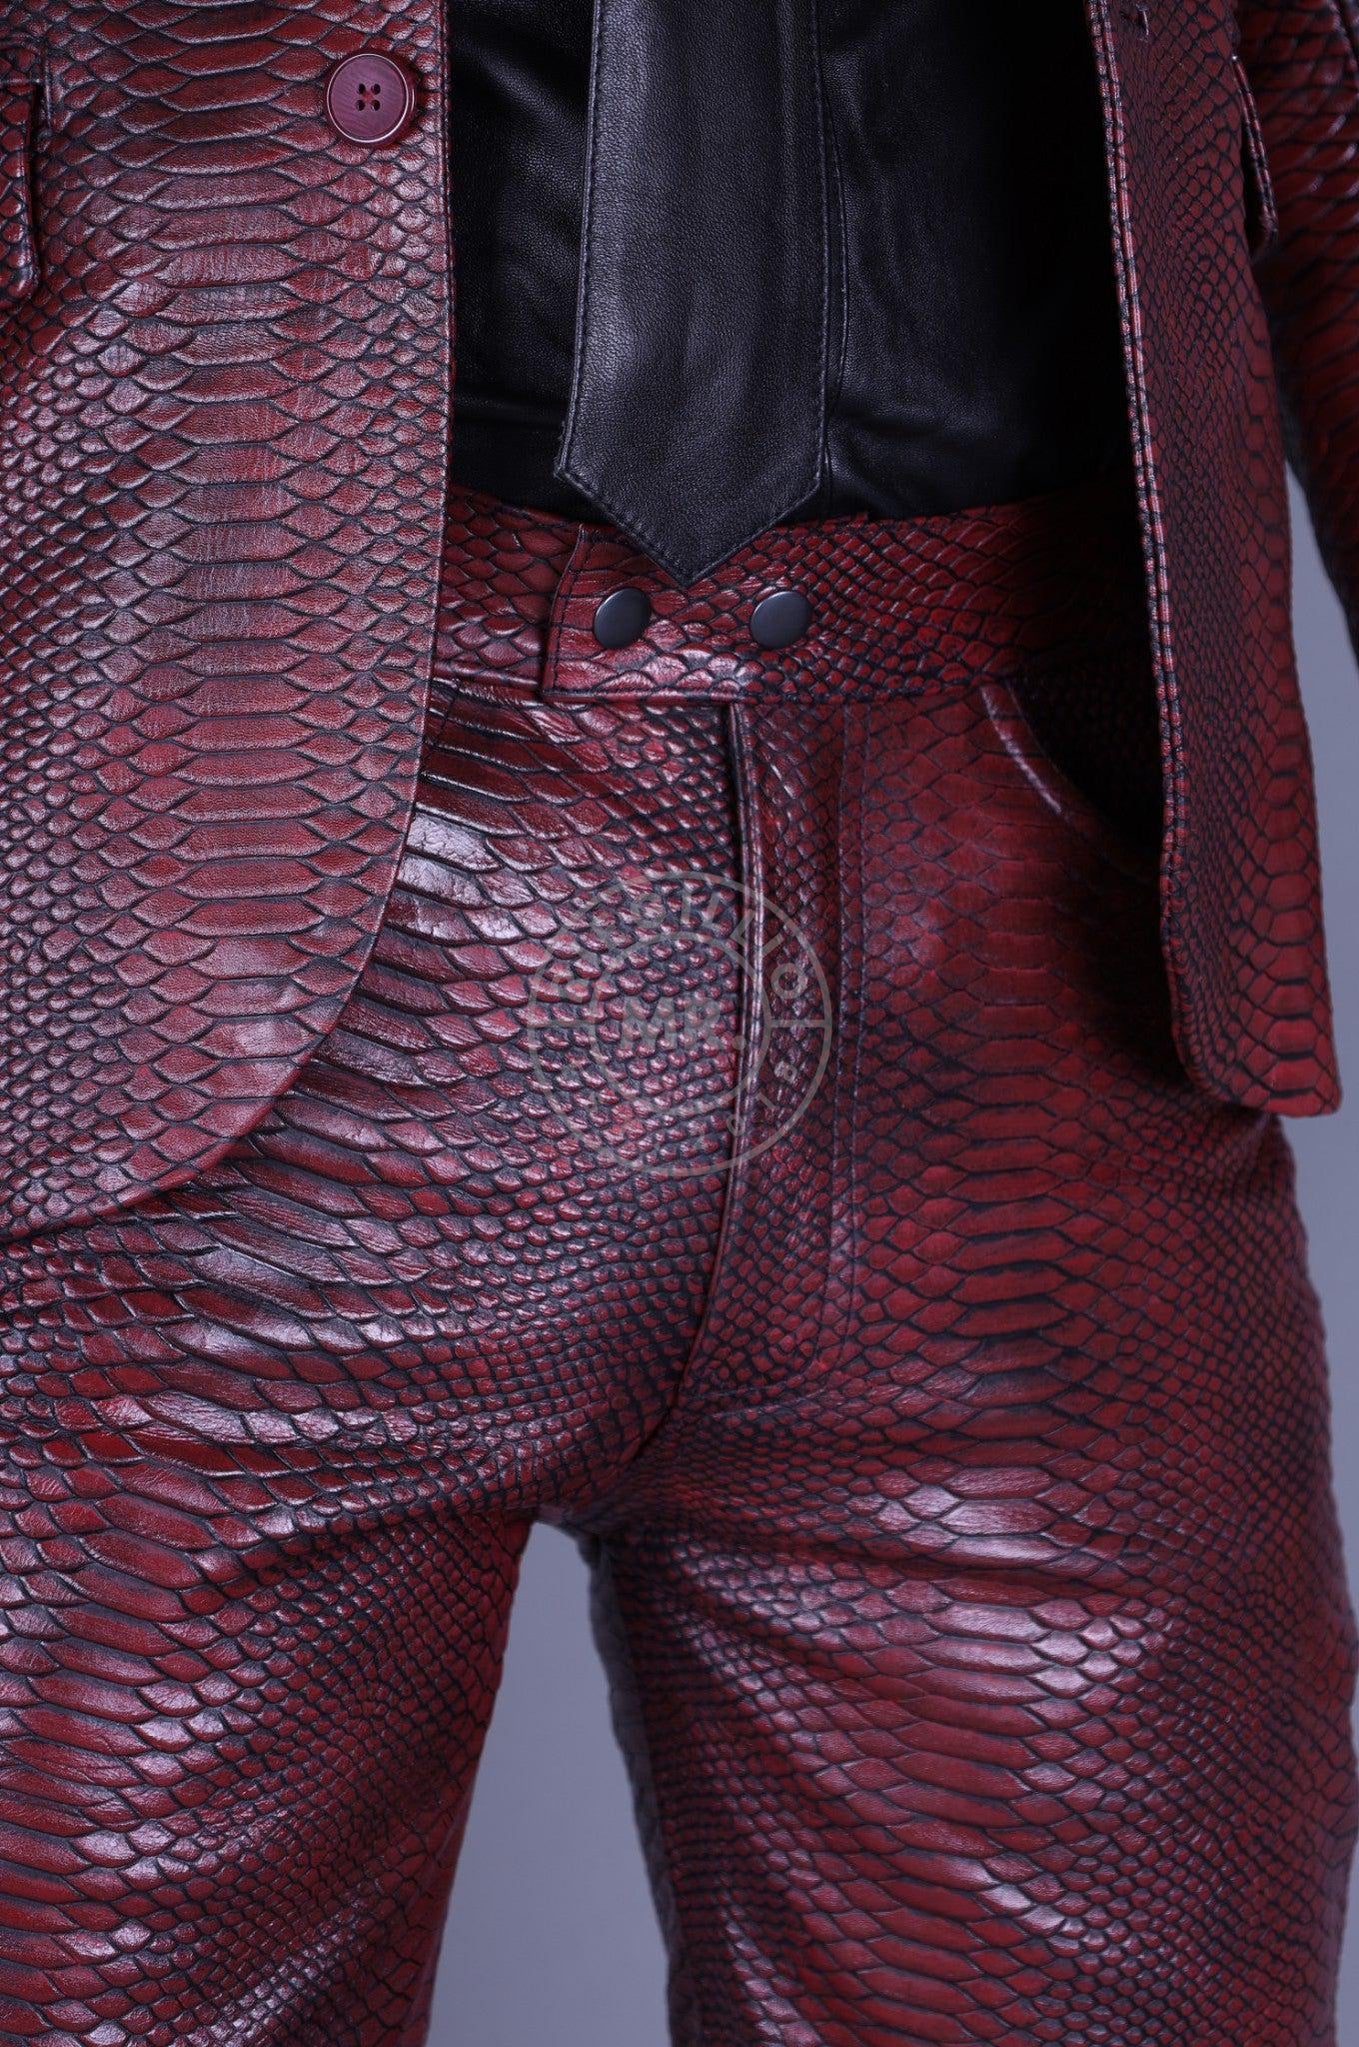 人気が高い【NOILL vintage】Python leather trousers パンツ